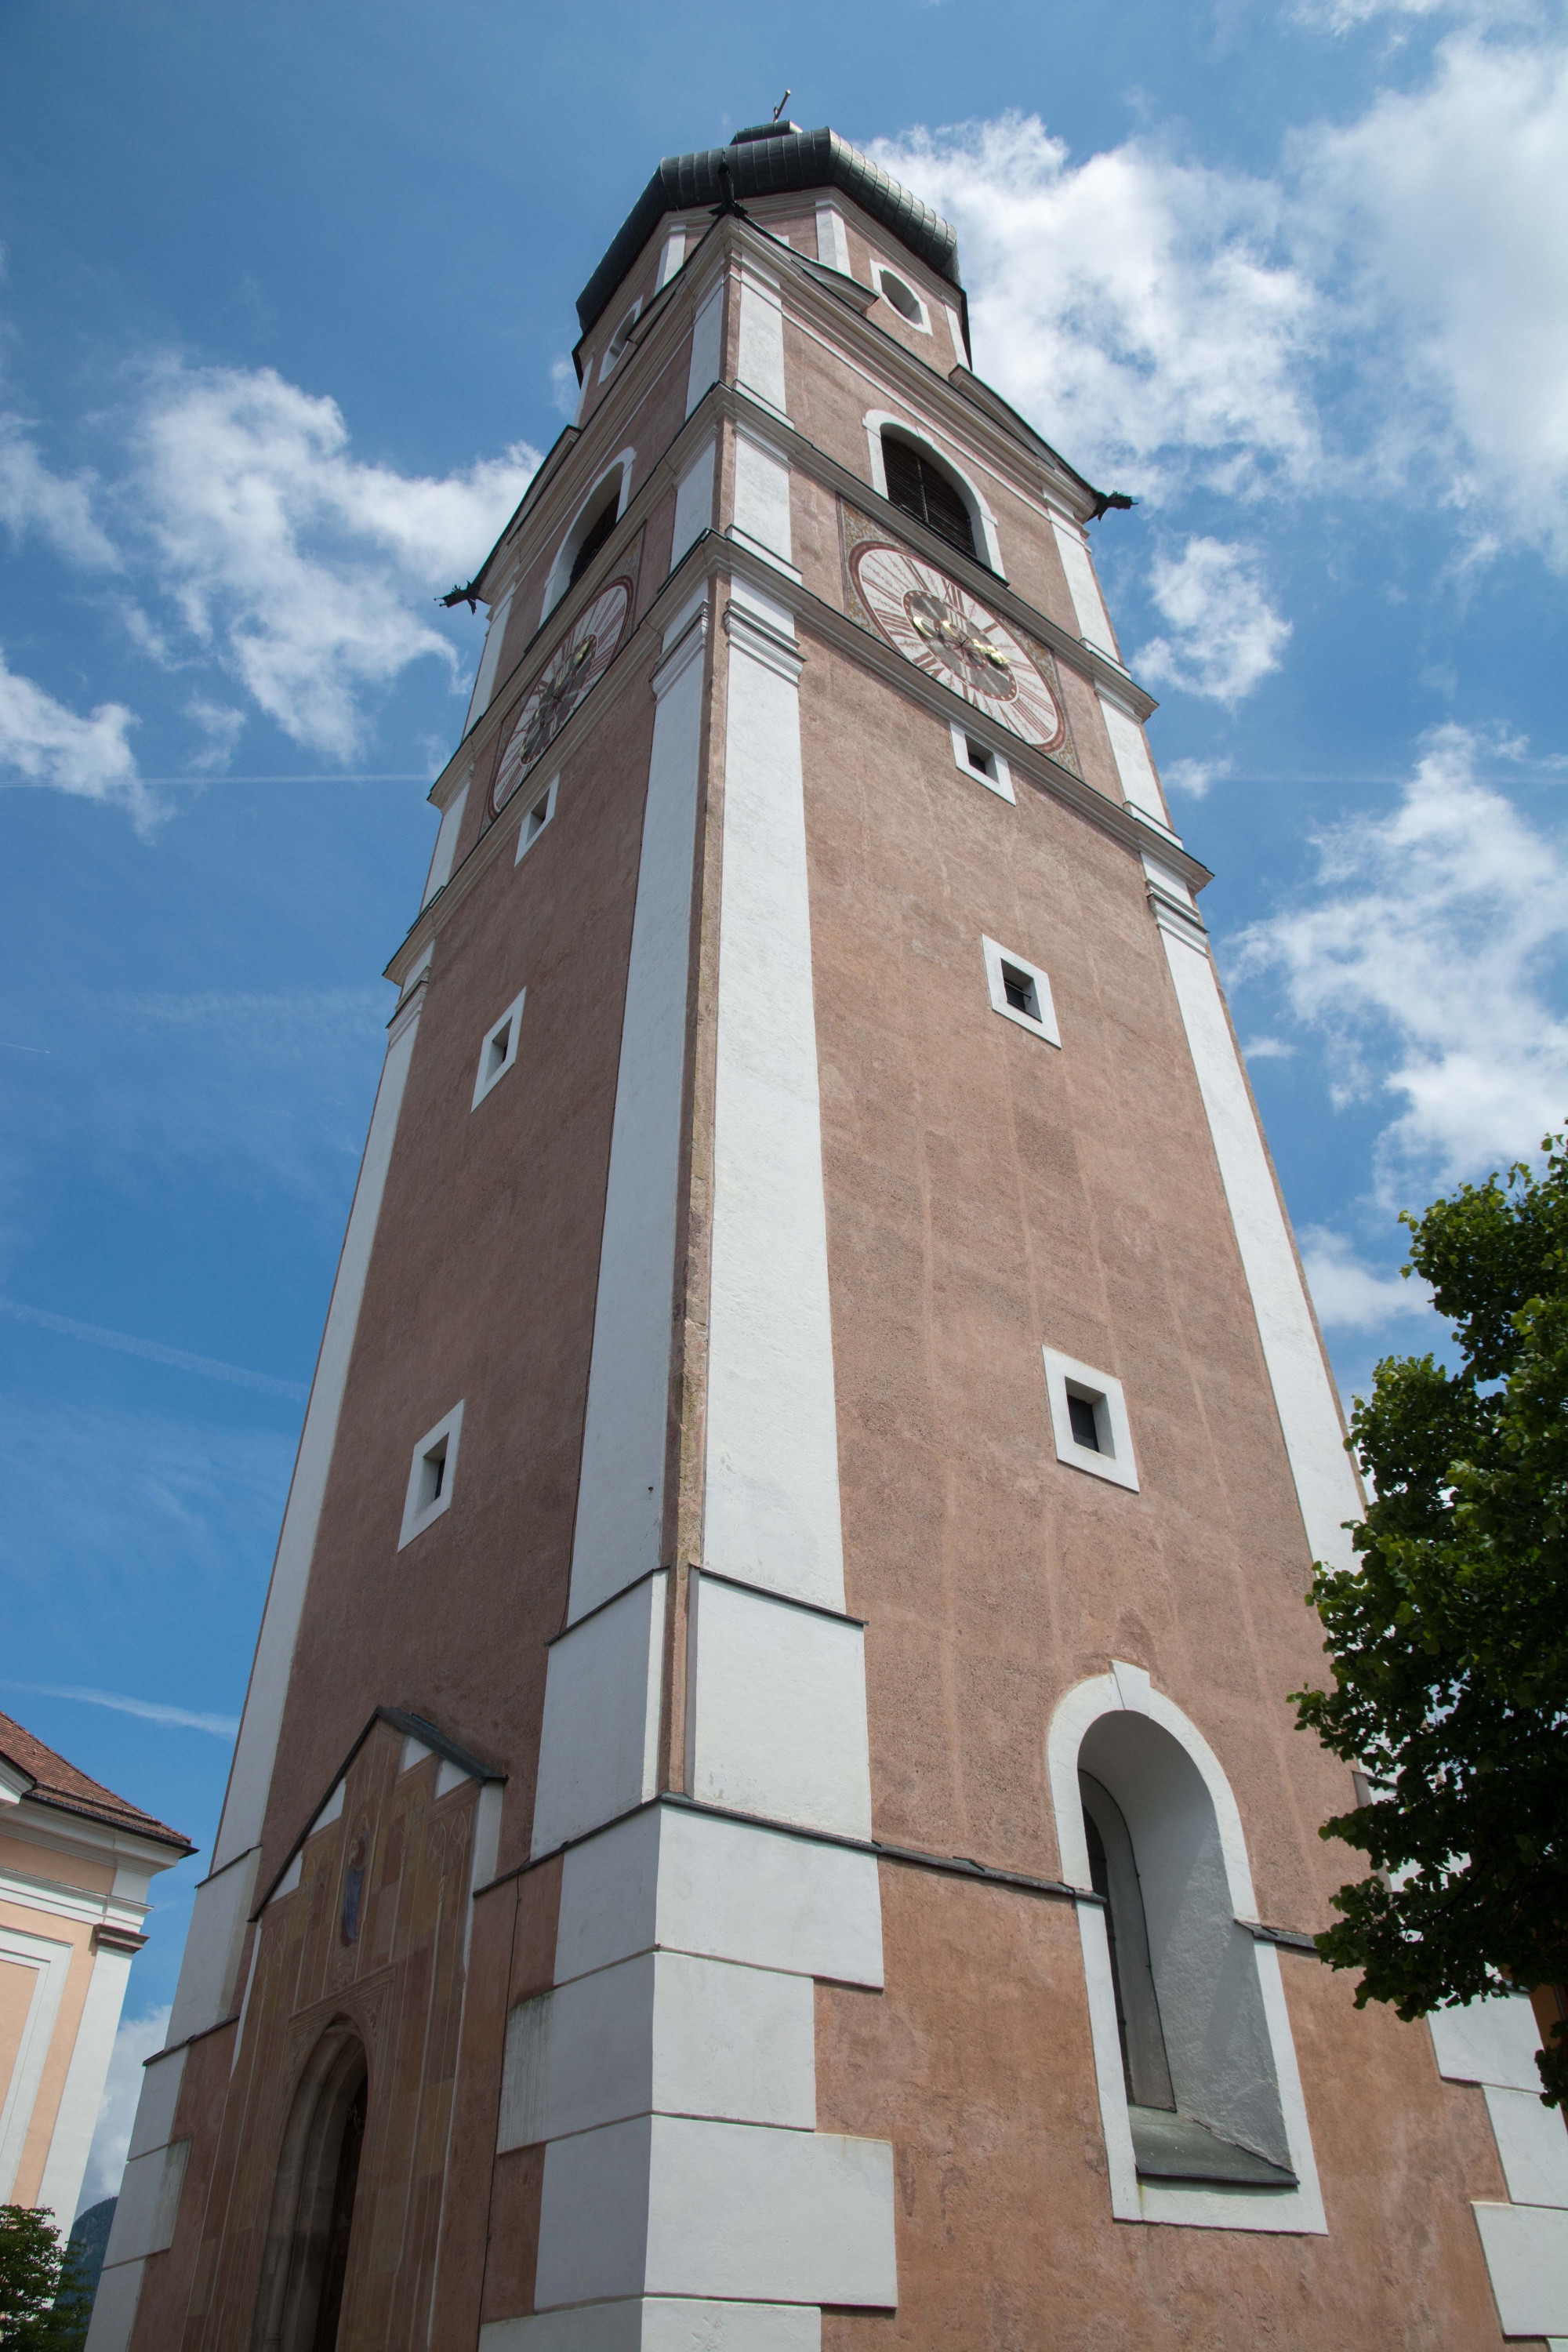 Church in Castelrotto (Kastelruth)